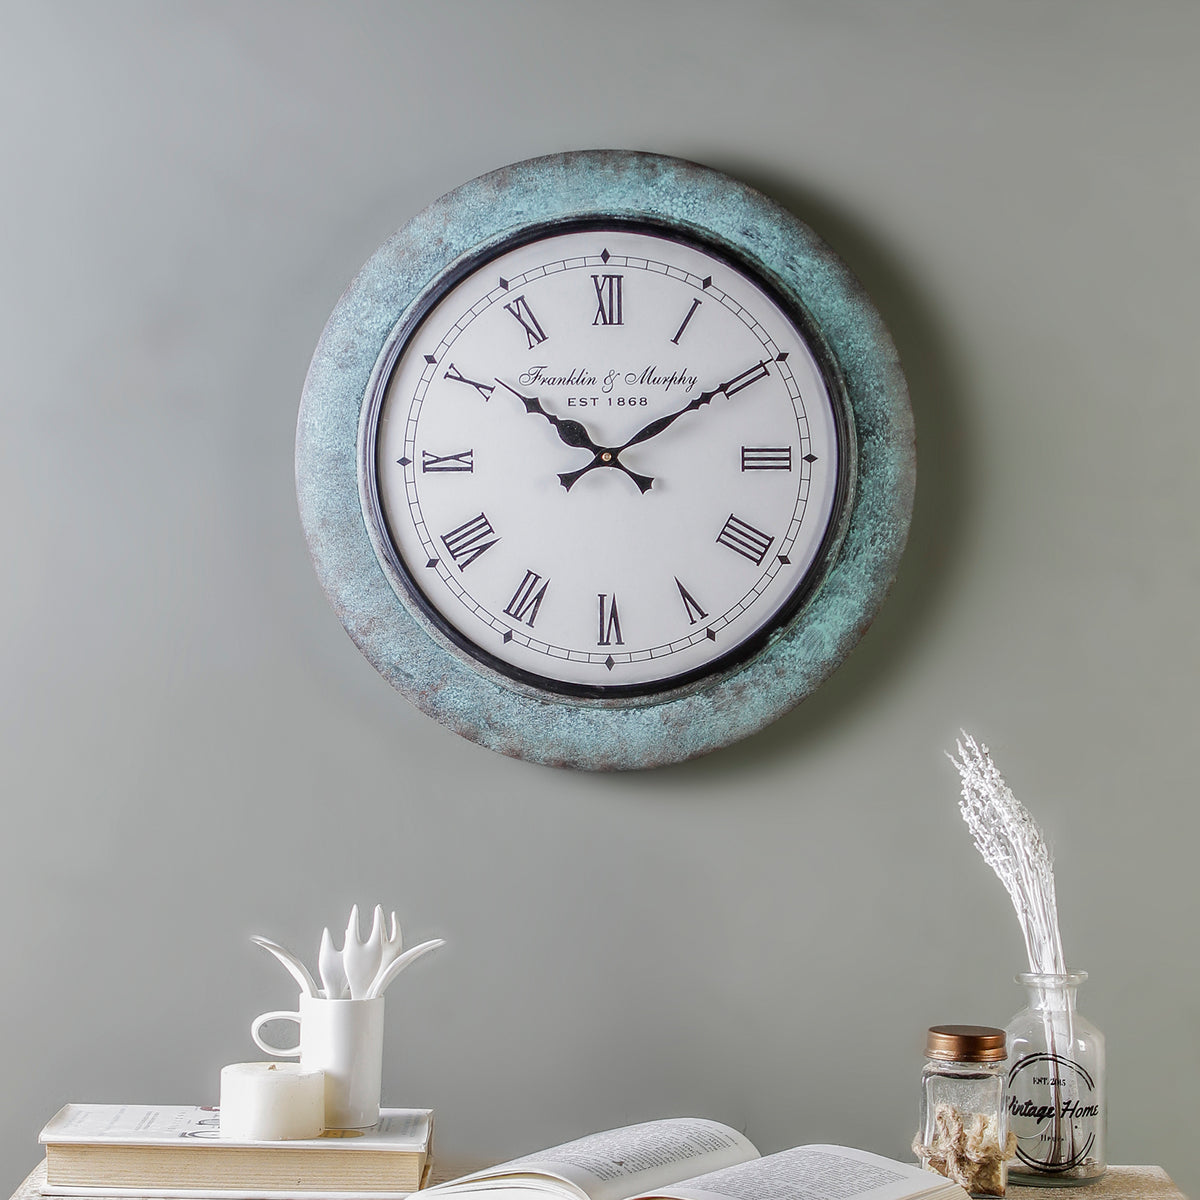 Buy Winwood Rustic MDF 15" Wall Clock online